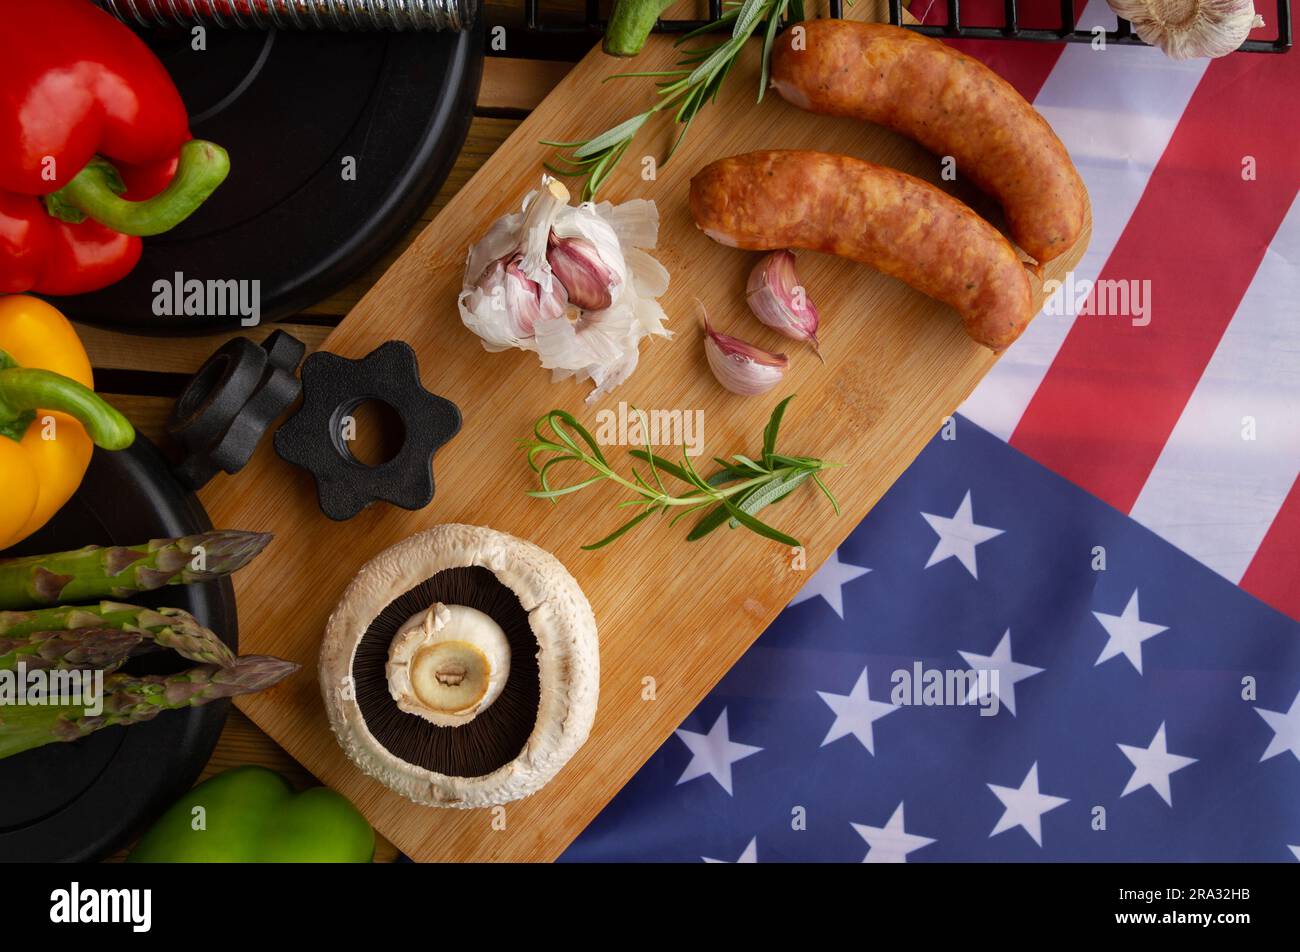 Manubri da palestra, cibo e bandiera degli Stati Uniti d'America. Concezione del barbecue per festeggiare il 4 luglio il giorno dell'indipendenza negli Stati Uniti. Foto Stock